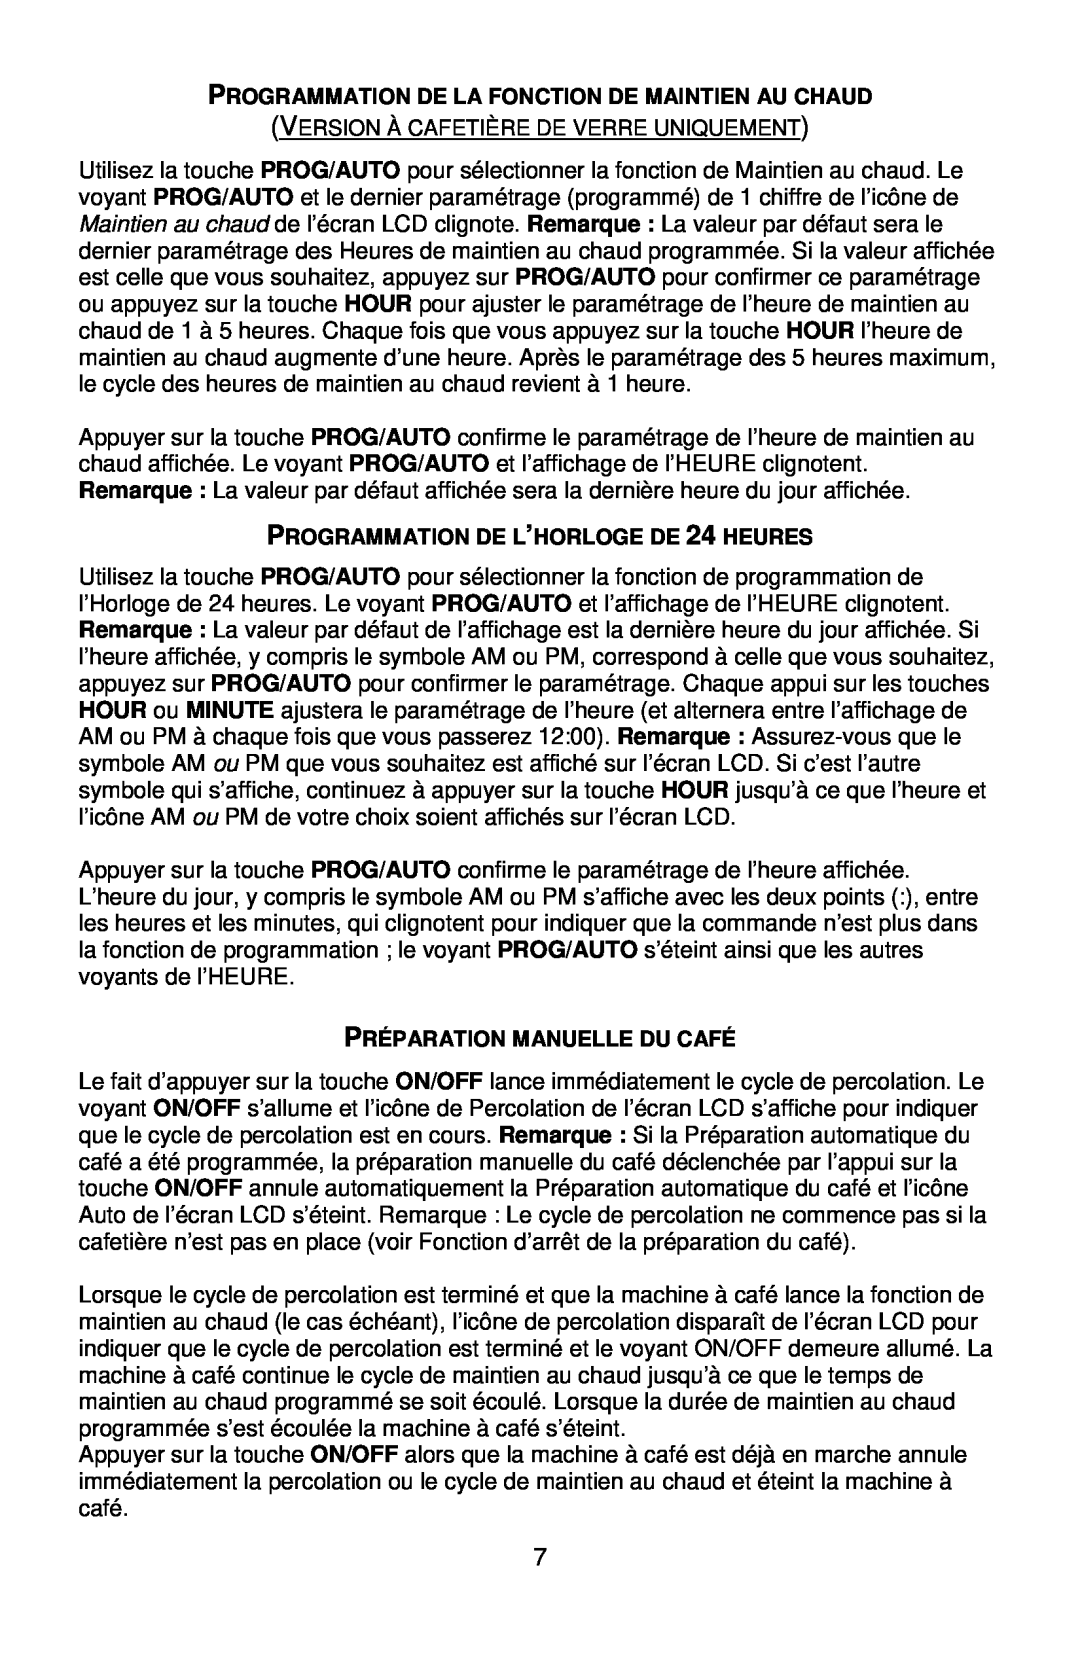 West Bend QUIKSERVE Programmation De La Fonction De Maintien Au Chaud, PROGRAMMATION DE L’HORLOGE DE 24 HEURES 